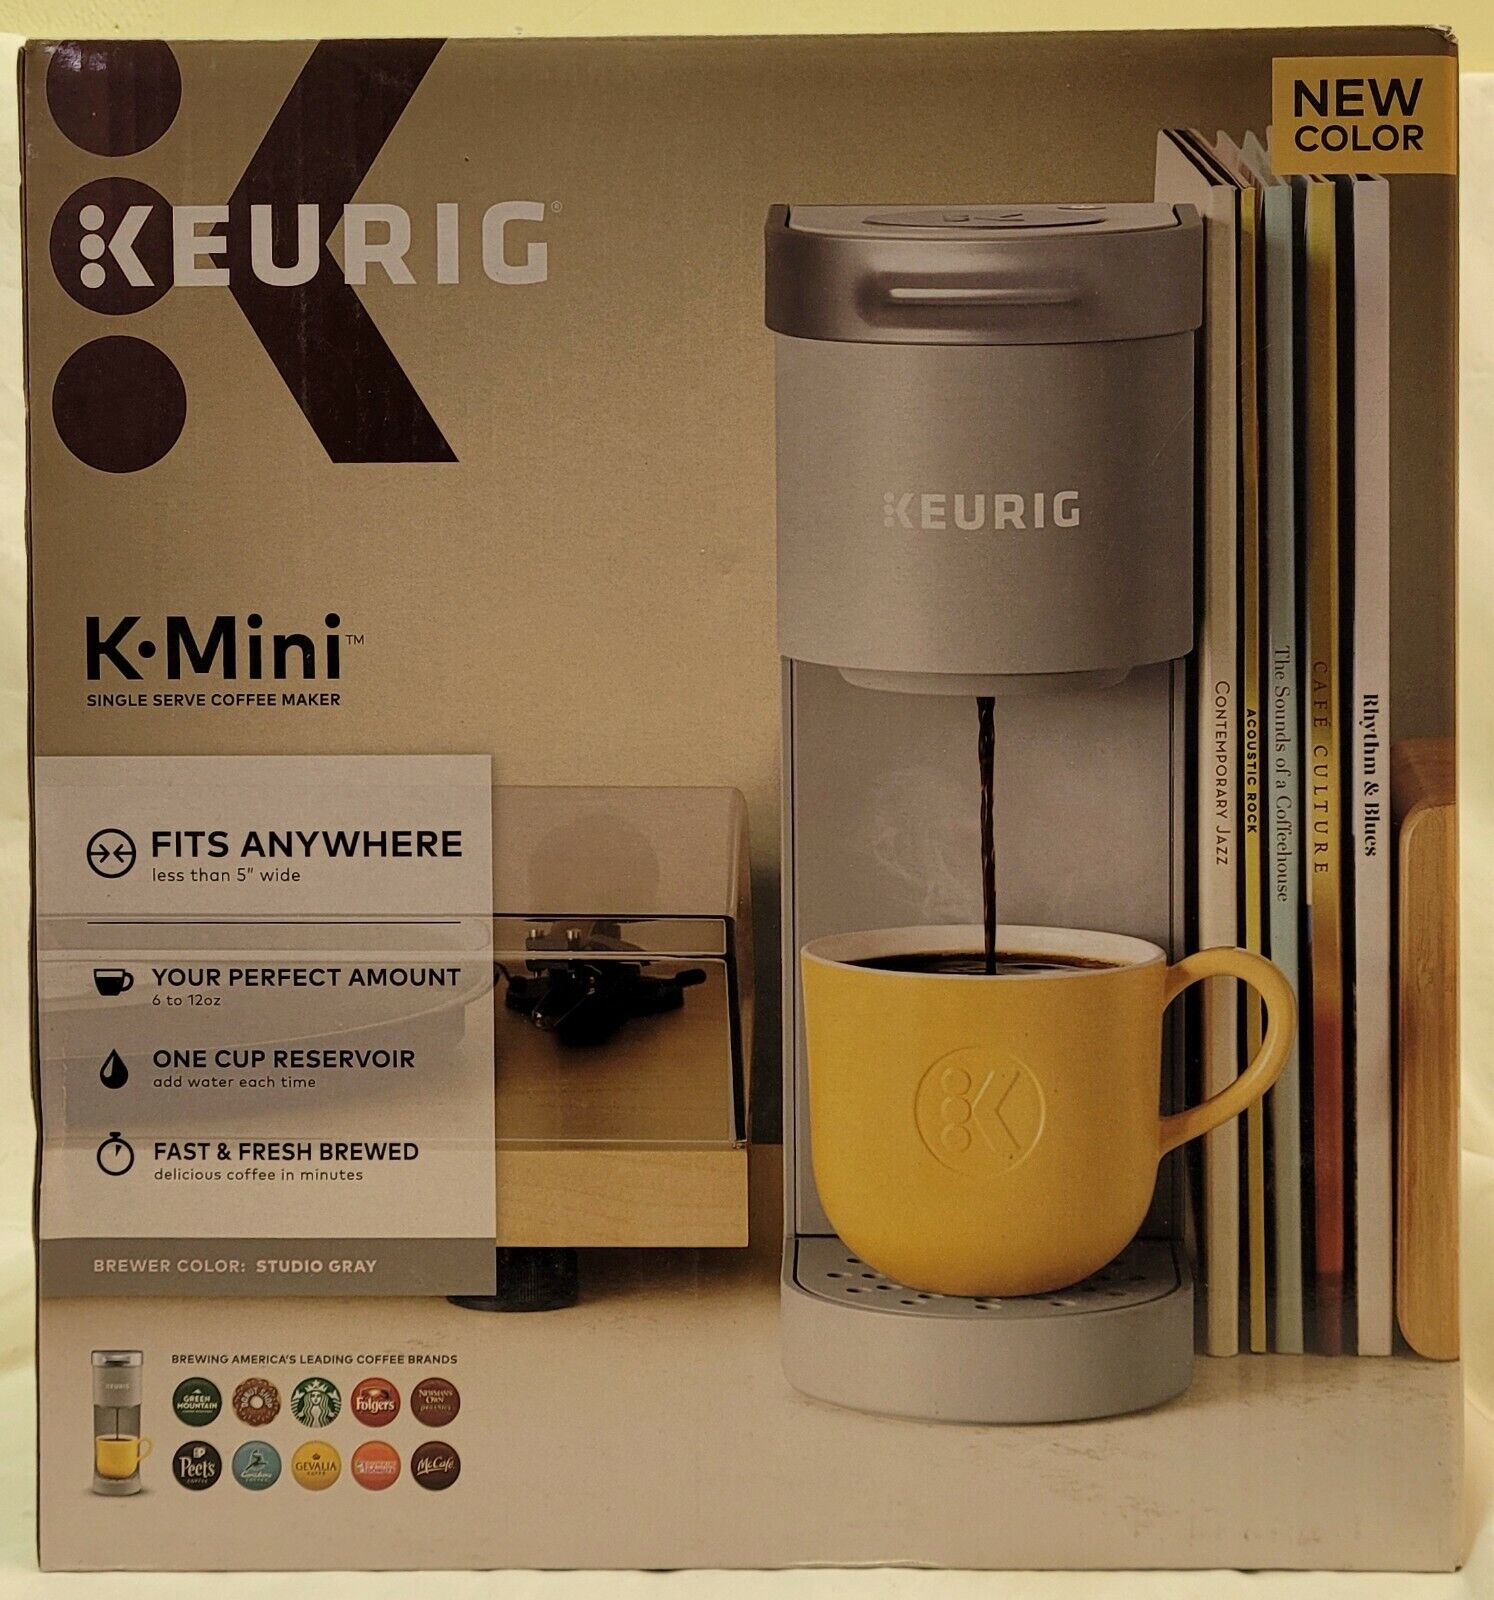 Brand New In The Box! Keurig K-mini Single Serve Coffee Maker - Studio Gray